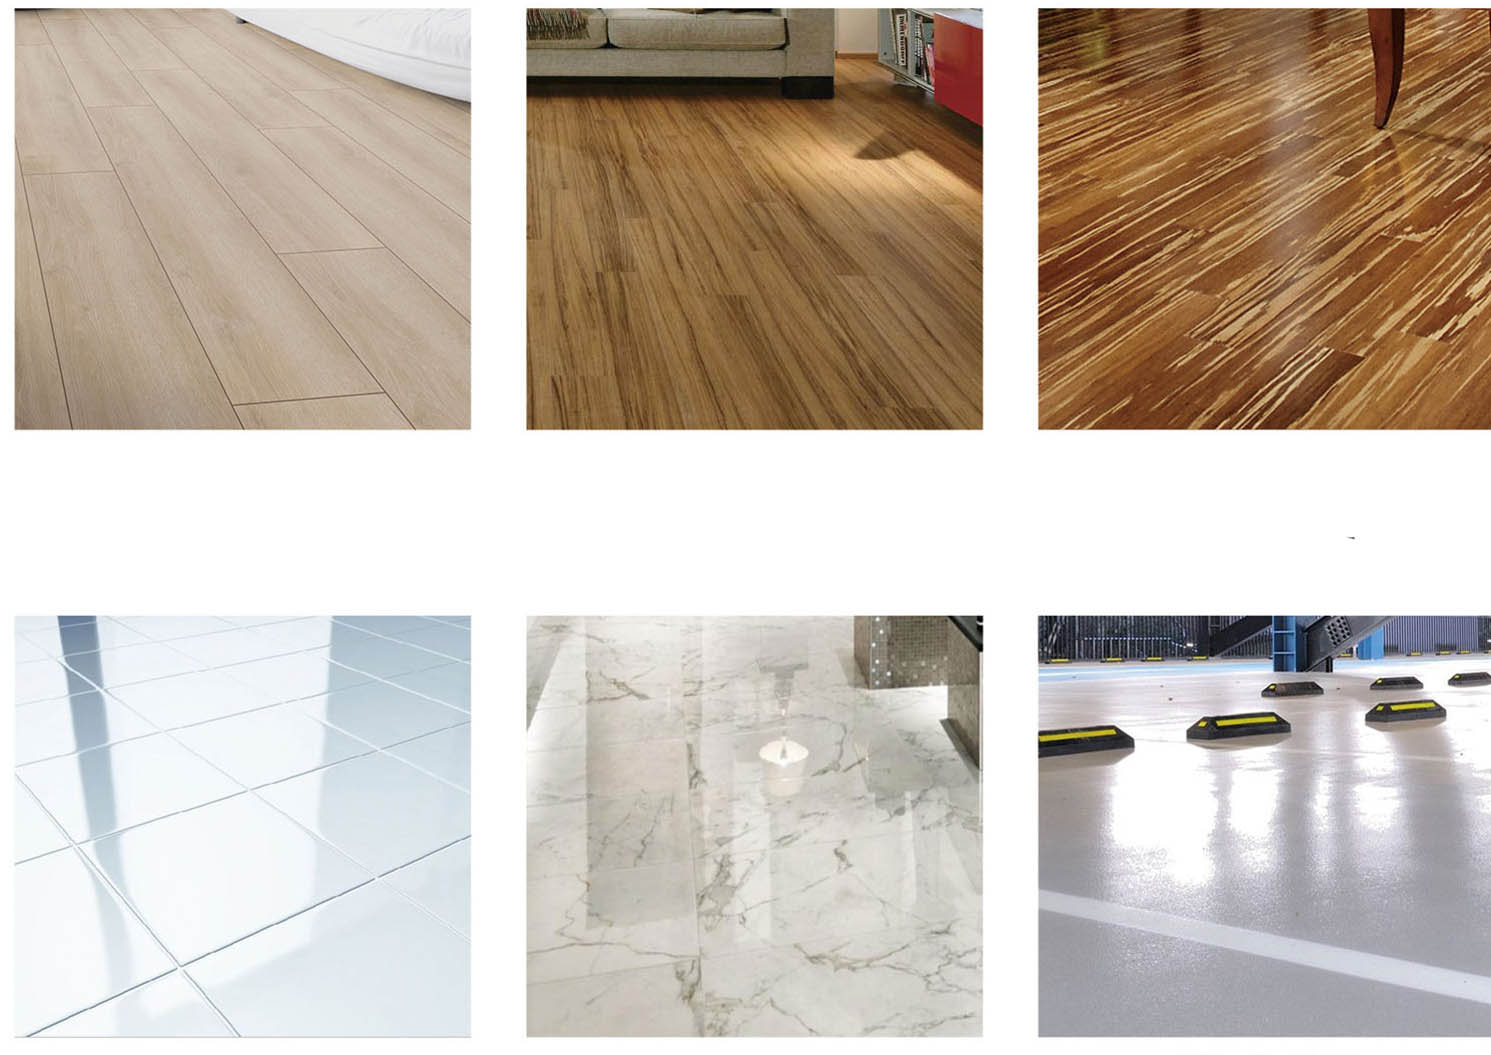 1+1 GRATIS | FloorCleaner | De krachtigste reiniger voor thuis met 100% natuurlijke producten